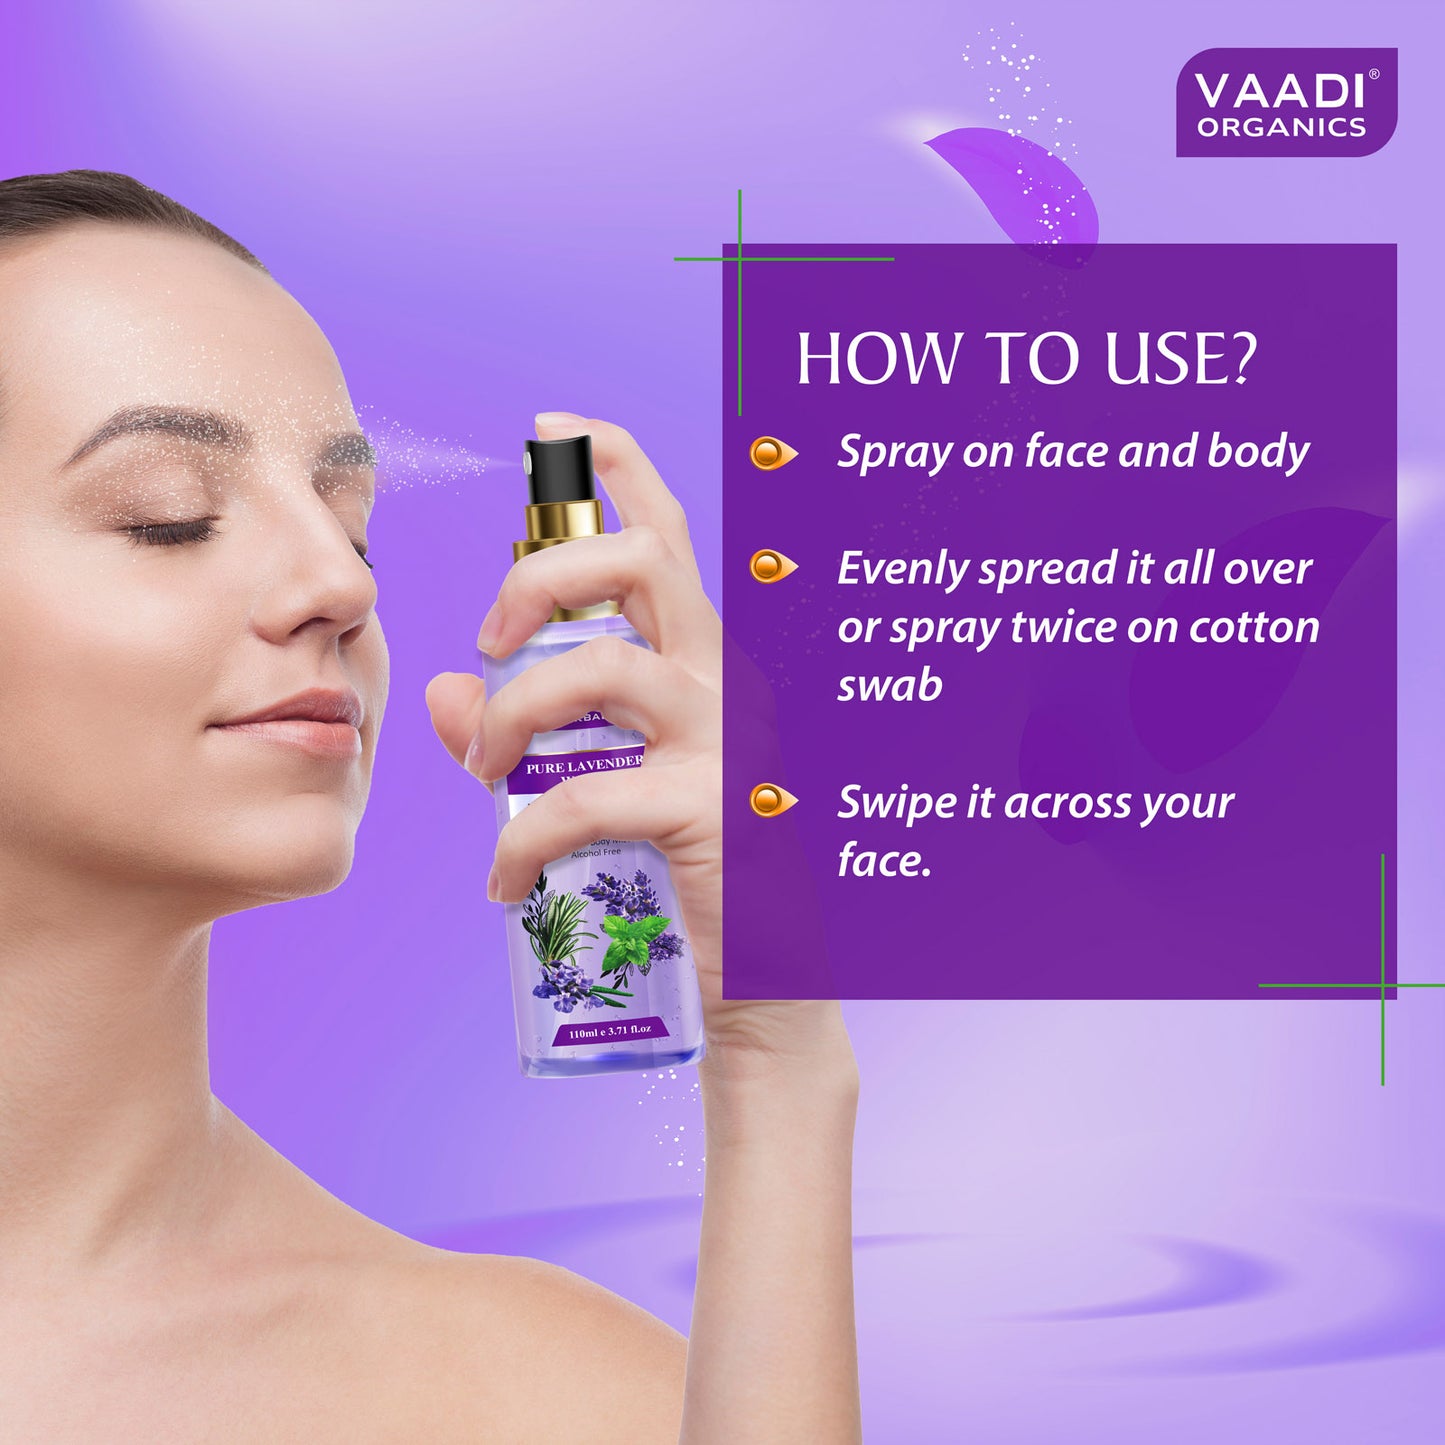 Lavender Water -100% Natural & Pure Skin Toner (110 ml)